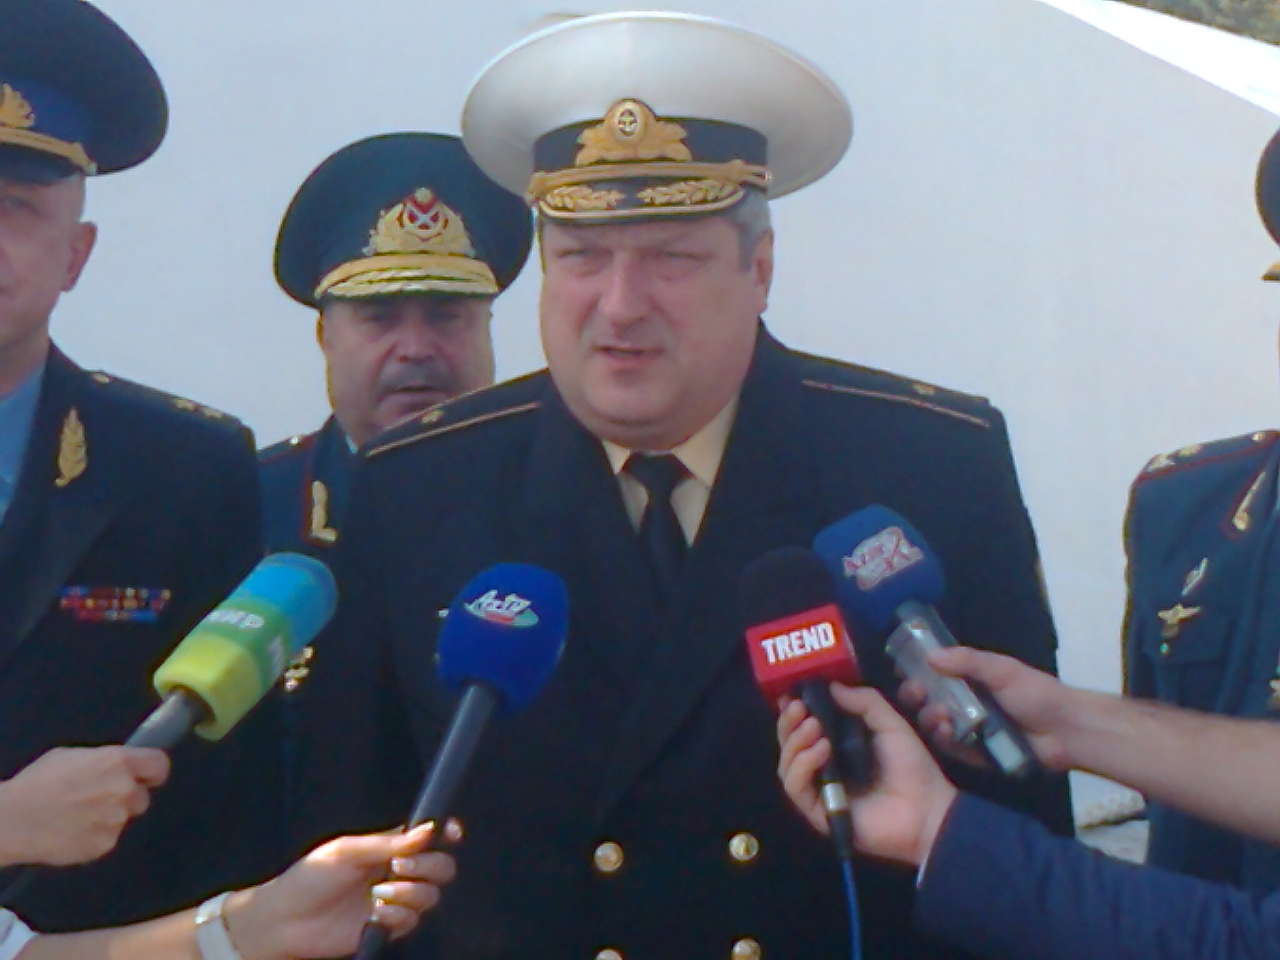 Техническое оснащение Госпогранслужбы Азербайджана соответствует мировым стандартам - замначальника береговой охраны РФ (ВИДЕО)